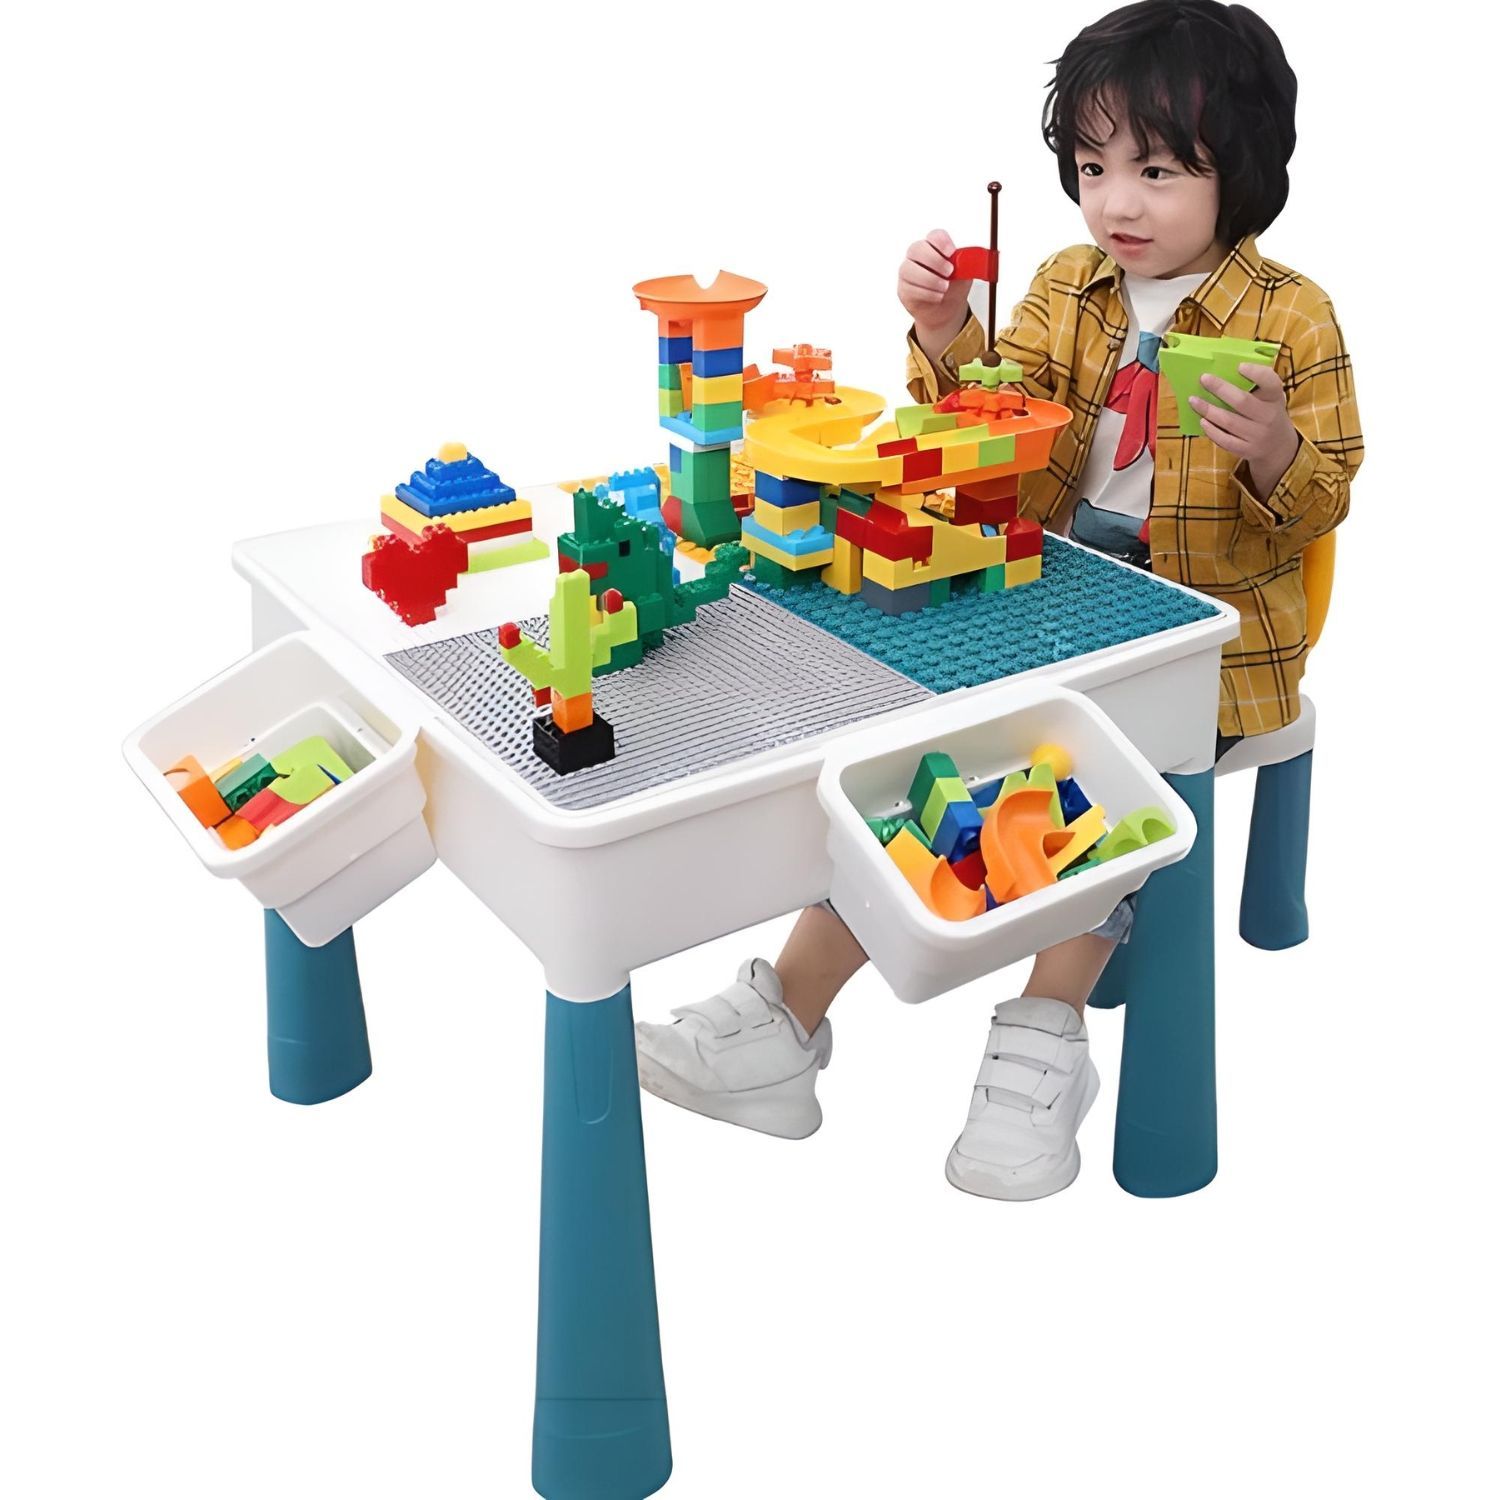 Juego De Rol Infantil Unisex Con Legos, Cajas, Mesa Y Silla